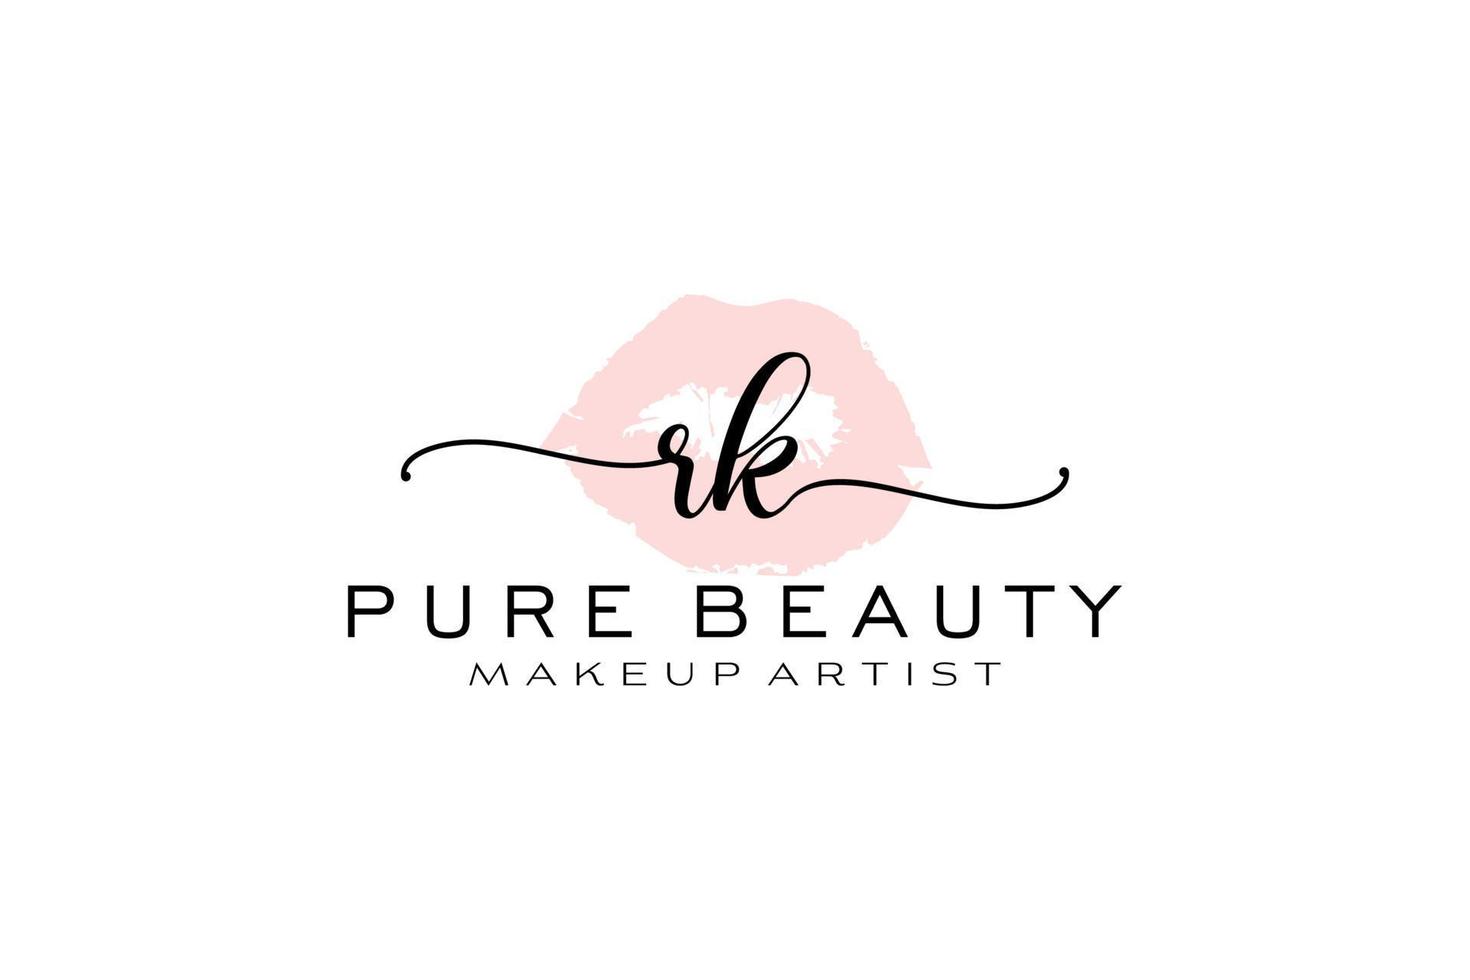 création initiale de logo préfabriqué pour les lèvres aquarelles rk, logo pour la marque d'entreprise de maquilleur, création de logo de boutique de beauté blush, logo de calligraphie avec modèle créatif. vecteur